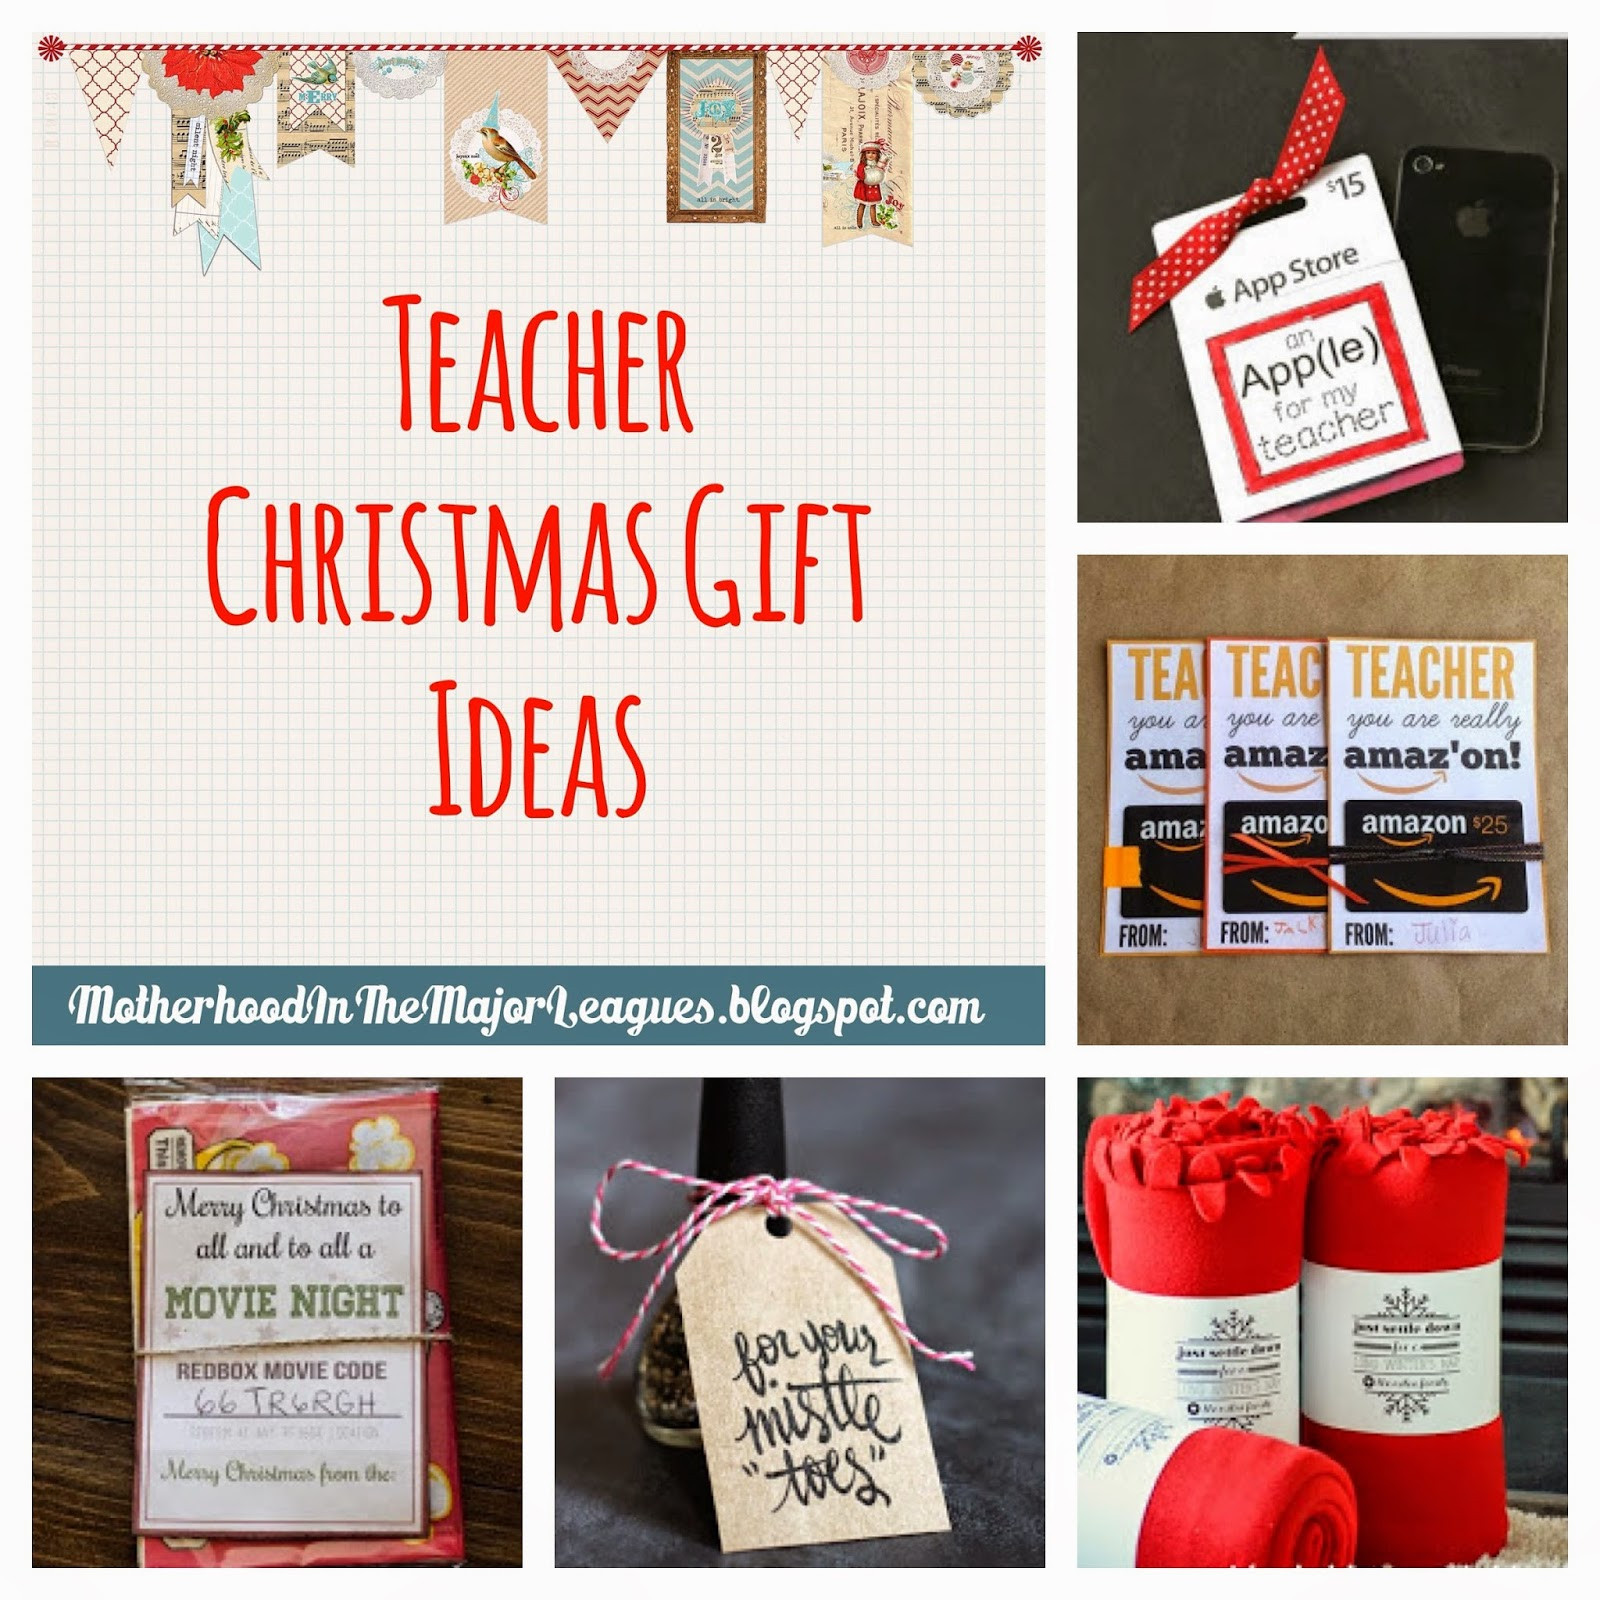 Classroom Christmas Gift Ideas
 Motherhood in the Major Leagues Teacher Christmas Gift Ideas